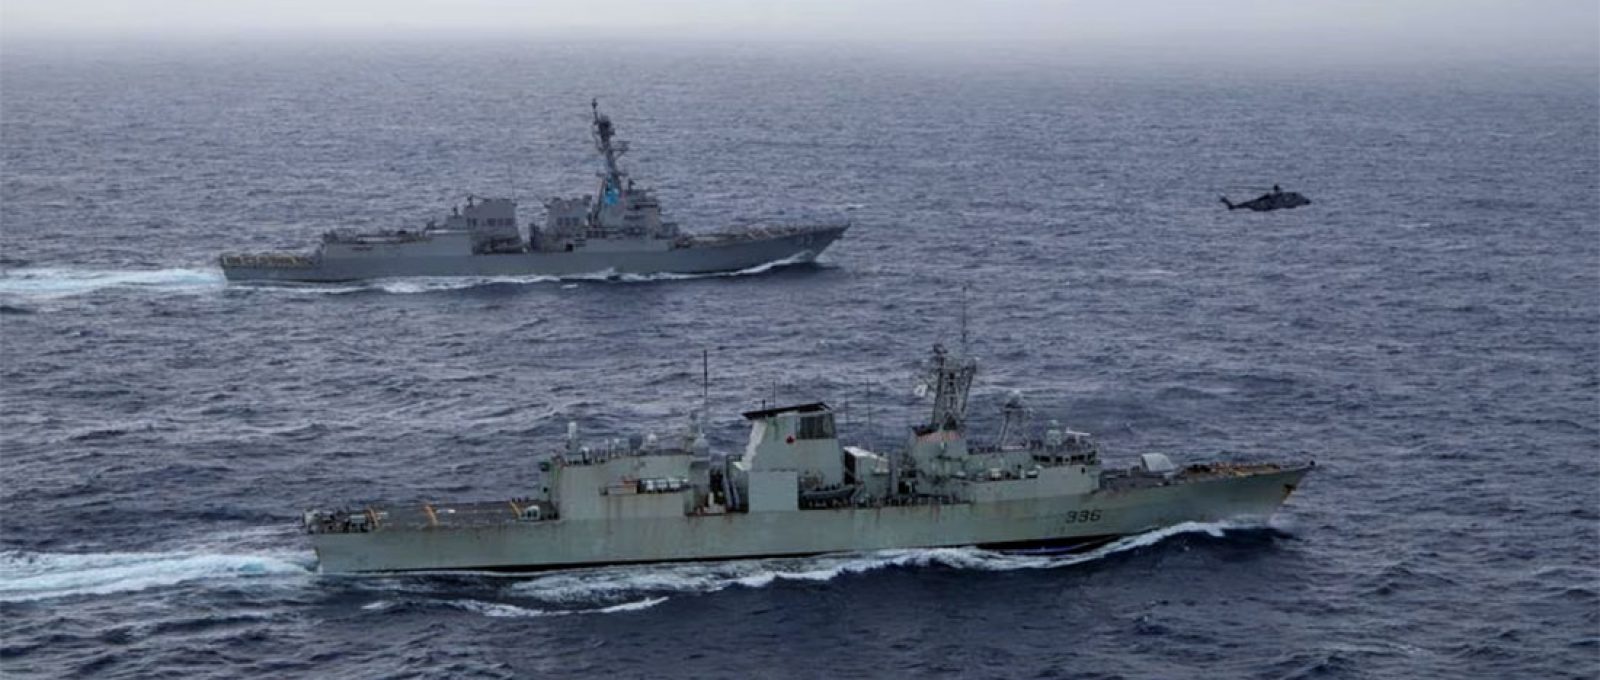 O contratorpedeiro da Marinha dos EUA USS Chung-Hoon navega ao lado da fragata HMCS Montreal da Marinha Real Canadense durante as operações do Grupo de Ação de Superfície como parte do exercício “Noble Wolverine” no Mar da China Meridional, 30 de maio de 2023 (Dalton Cooper/Divulgação via Reuters).